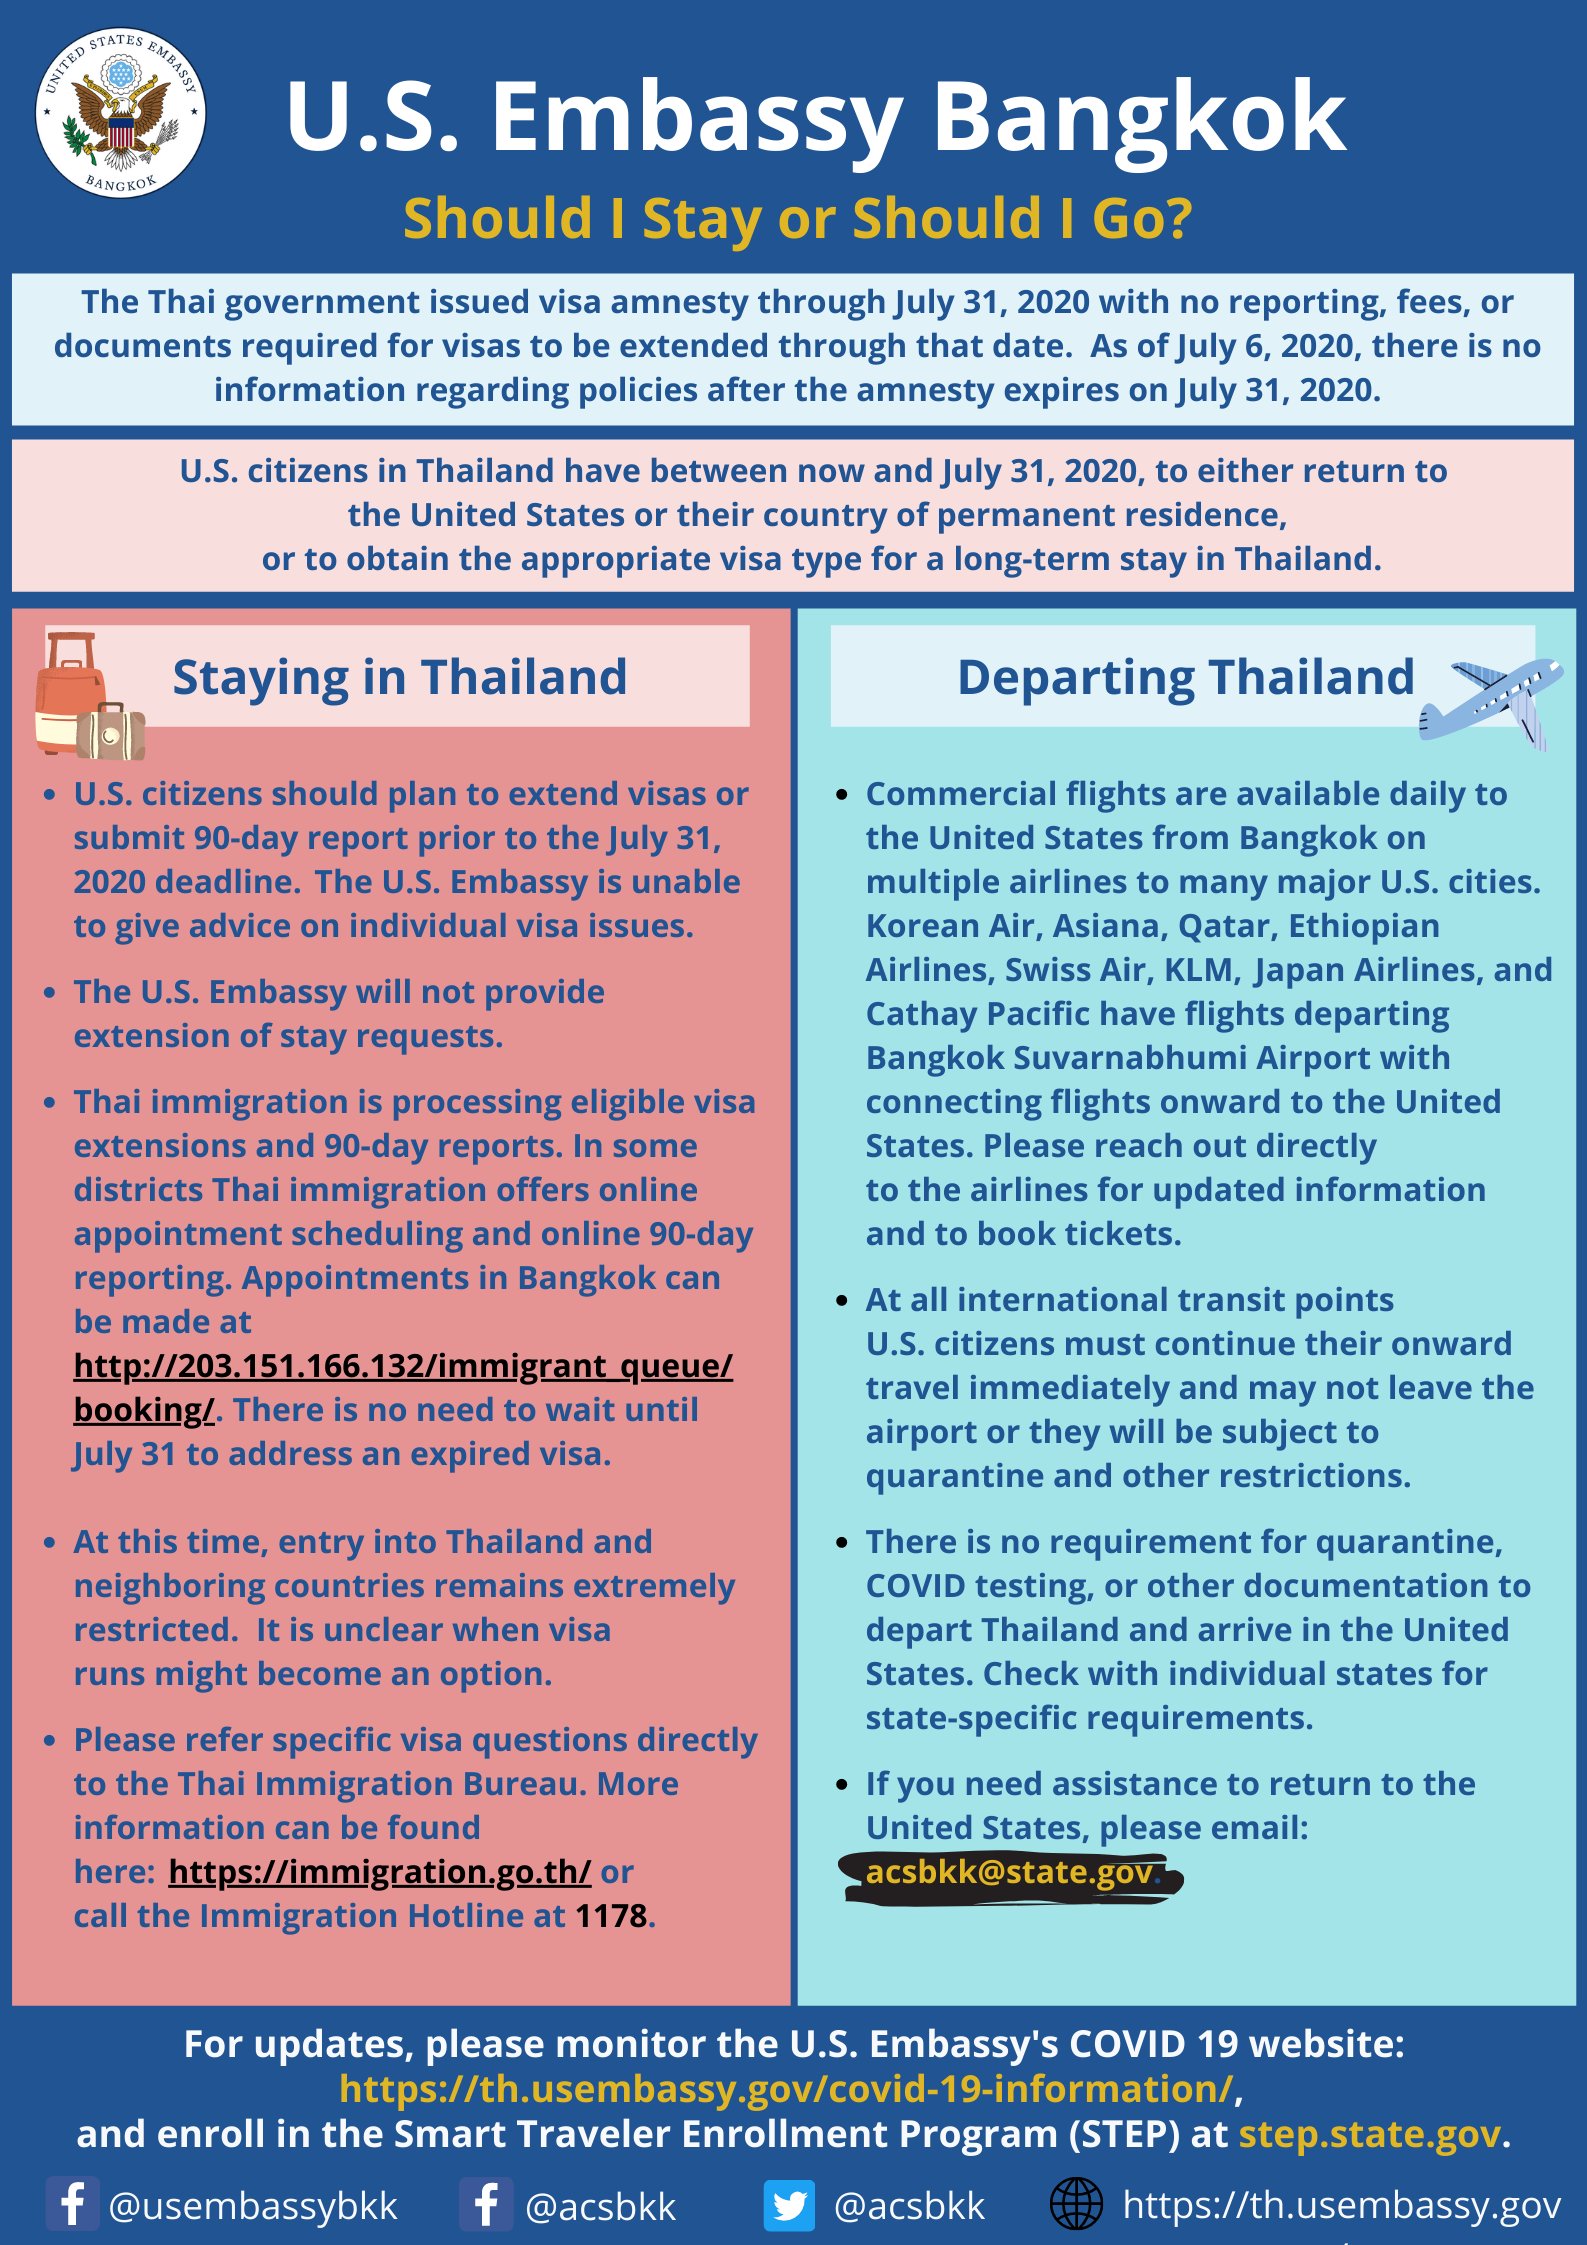 La amnistía de visas de Tailandia para los visitantes - Archivo 29/09/2020 - Coronavirus a nivel mundial y Turismo: noticias, dudas salud